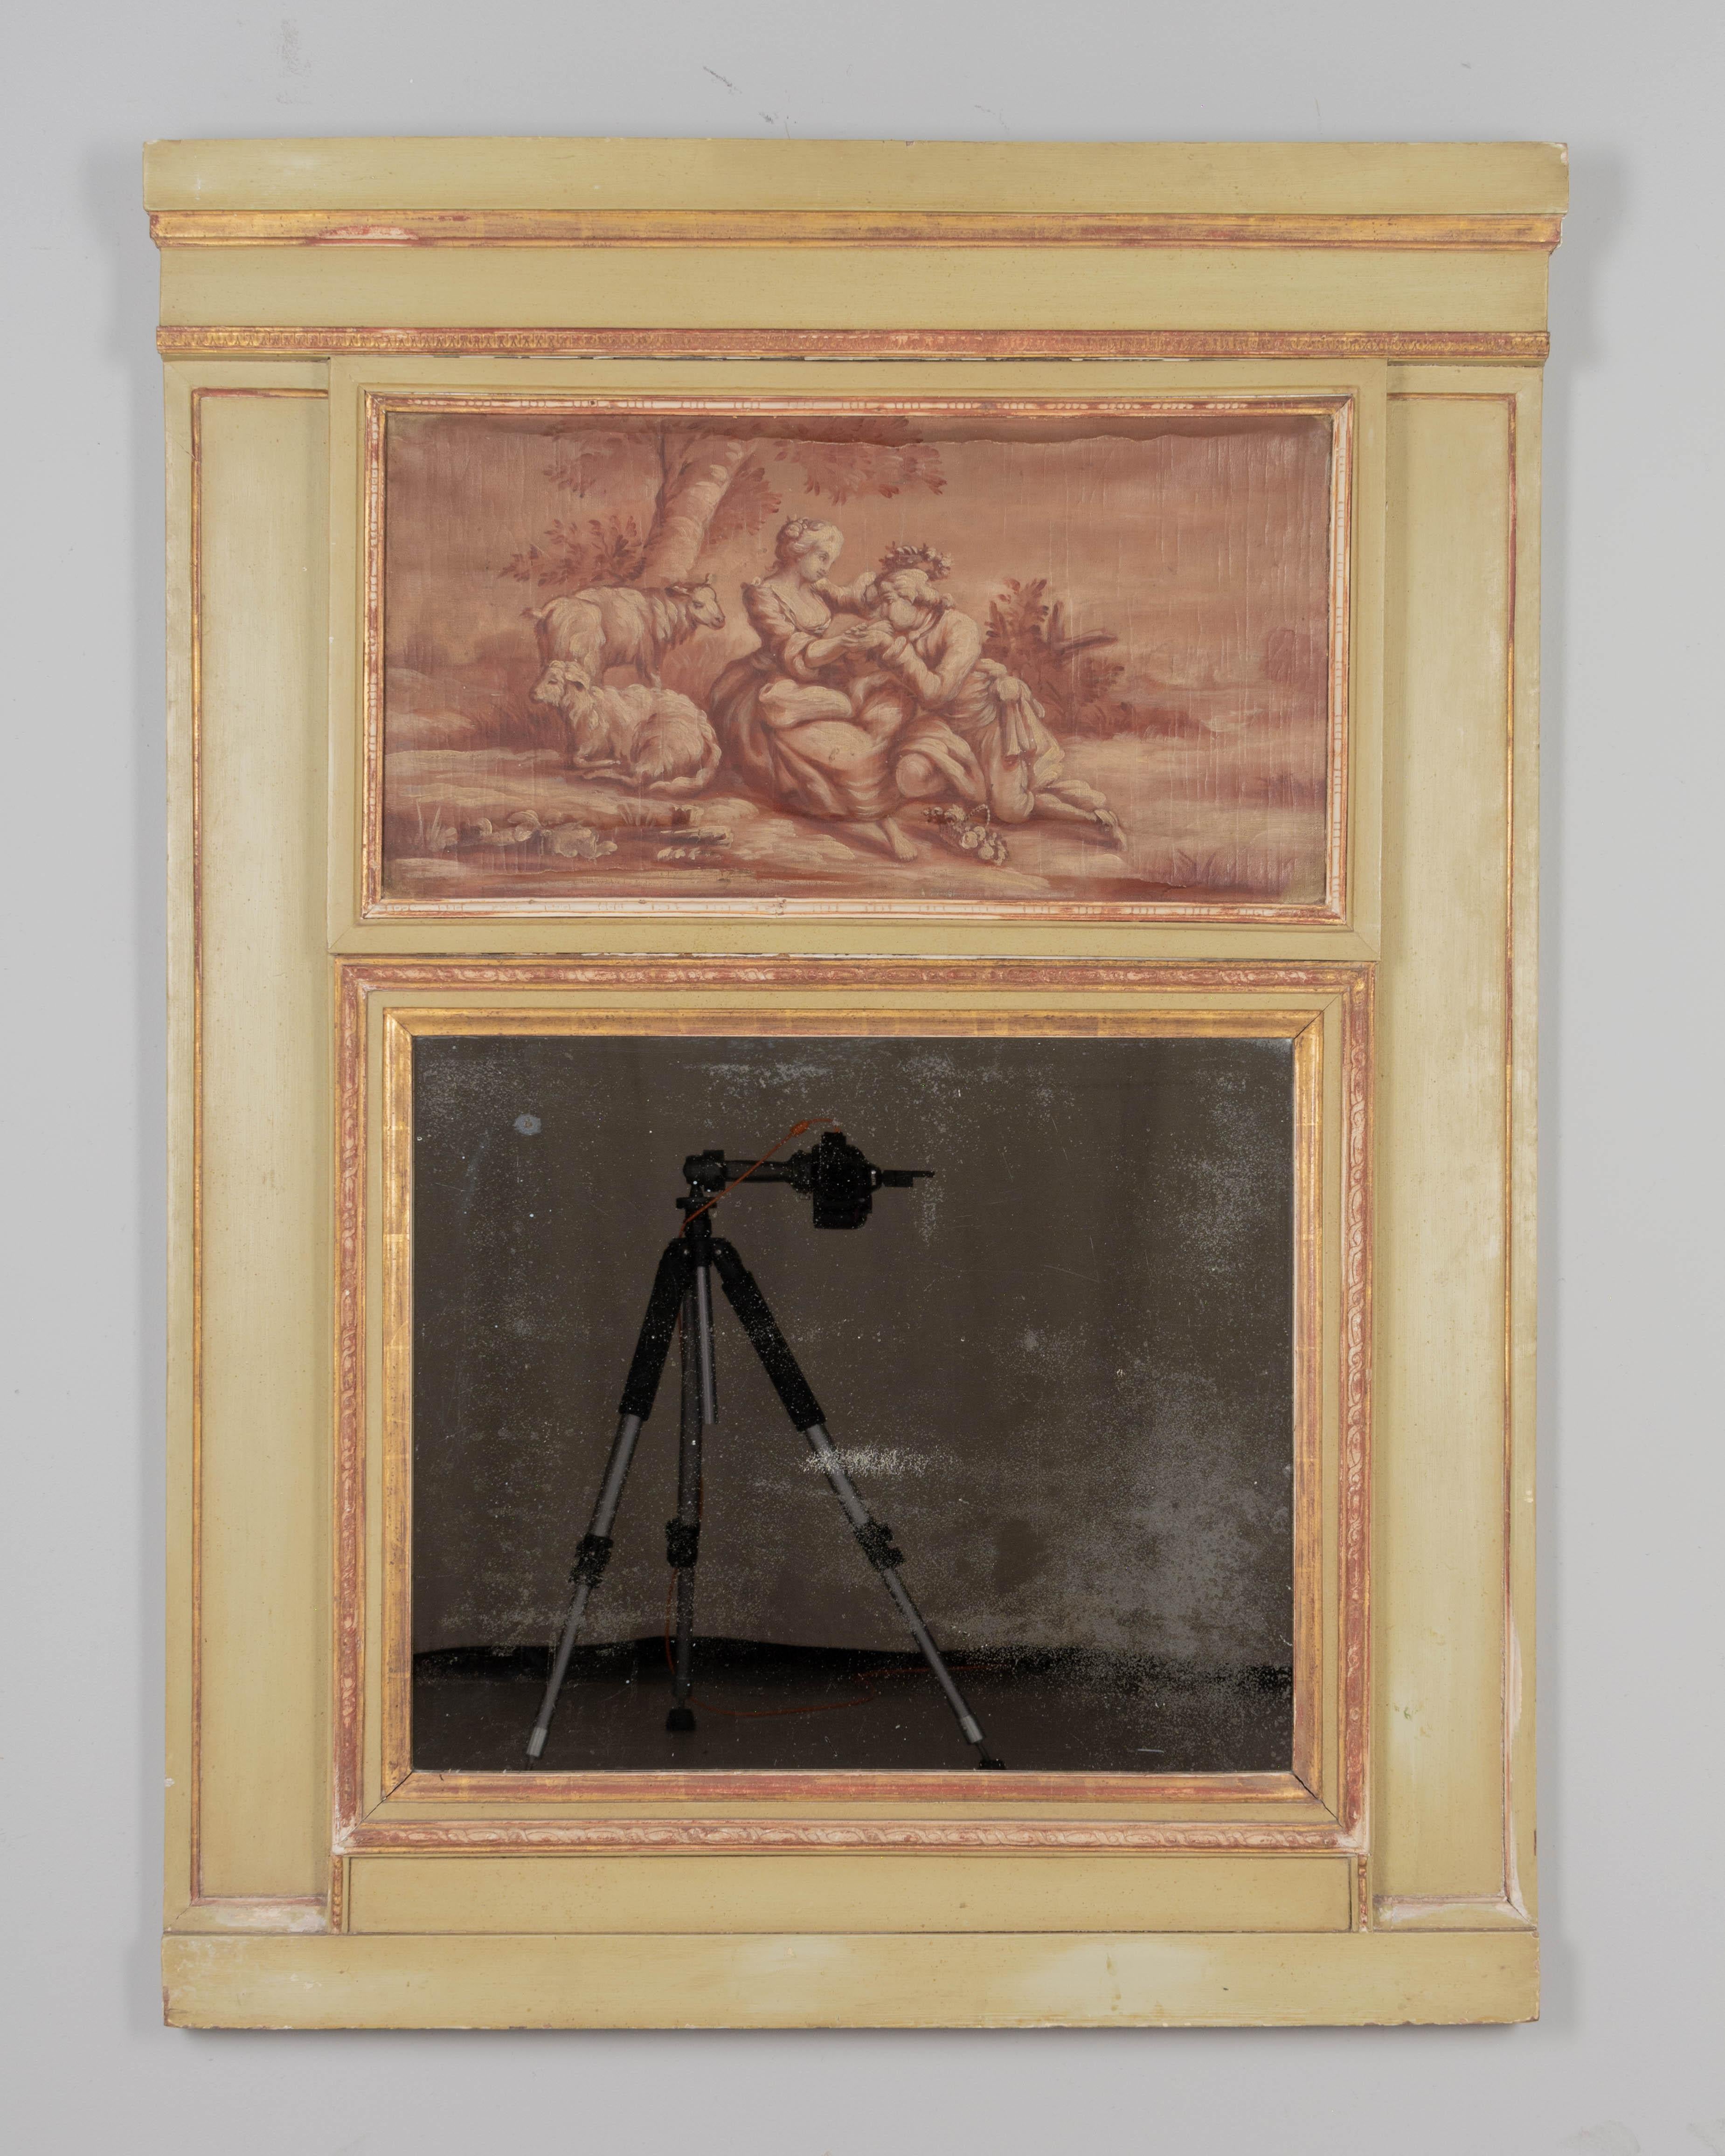 Ein französischer Trumeau-Spiegel im Louis-XVI-Stil aus dem 19. Jahrhundert mit einem sepiafarbenen Ölgemälde, das eine pastorale Balzszene darstellt. Blassgrün lackierter Kiefernholzrahmen mit vergoldeter Bordüre. Originaler Spiegel mit alter